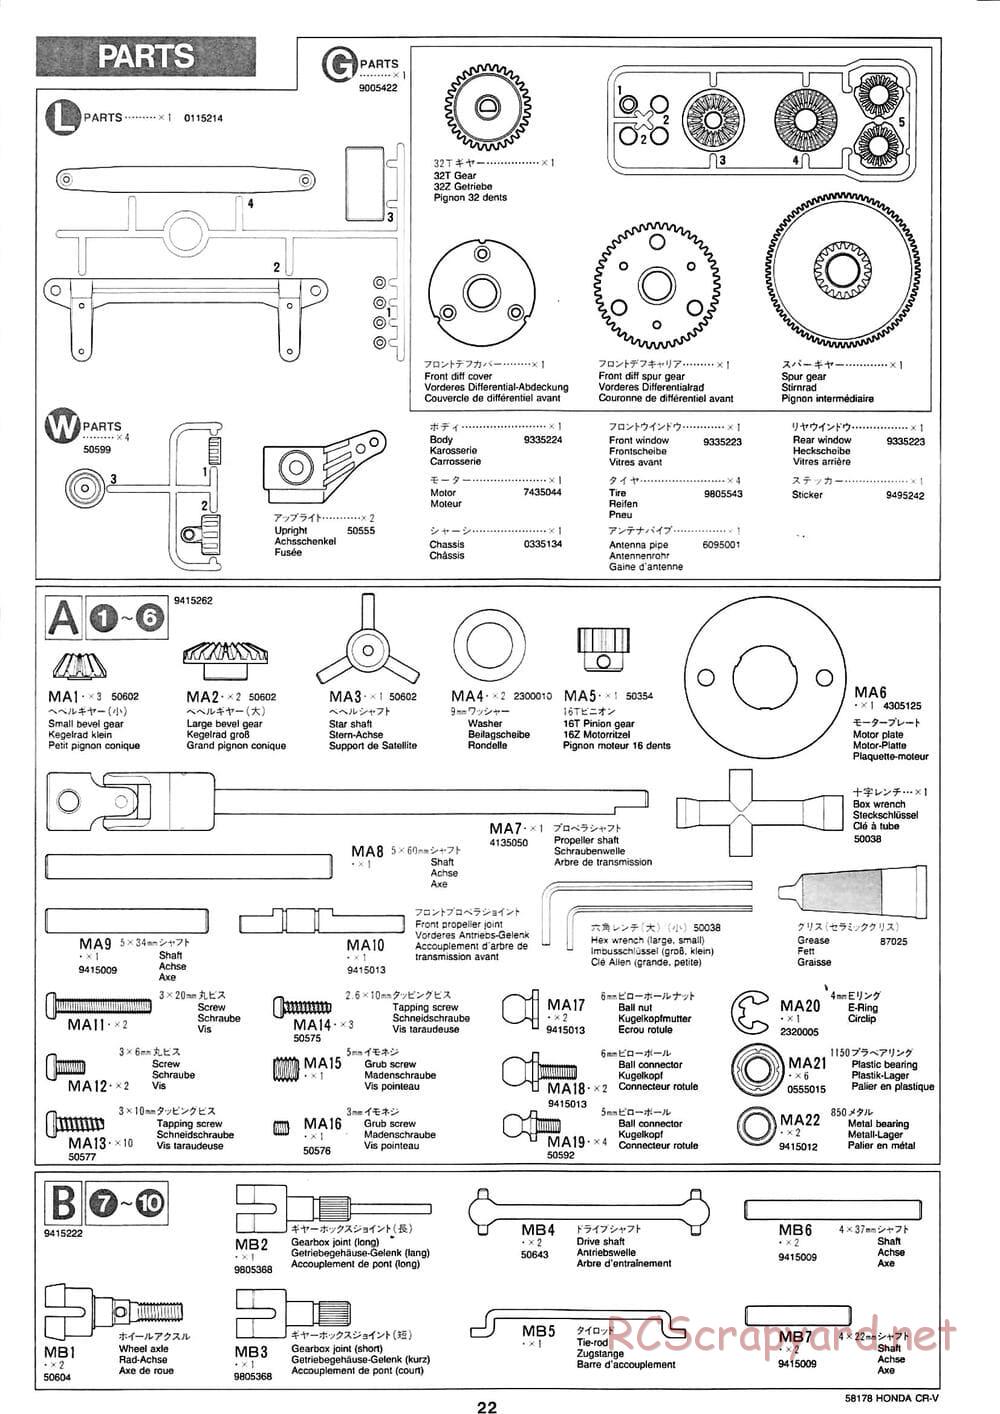 Tamiya - Honda CR-V - CC-01 Chassis - Manual - Page 22